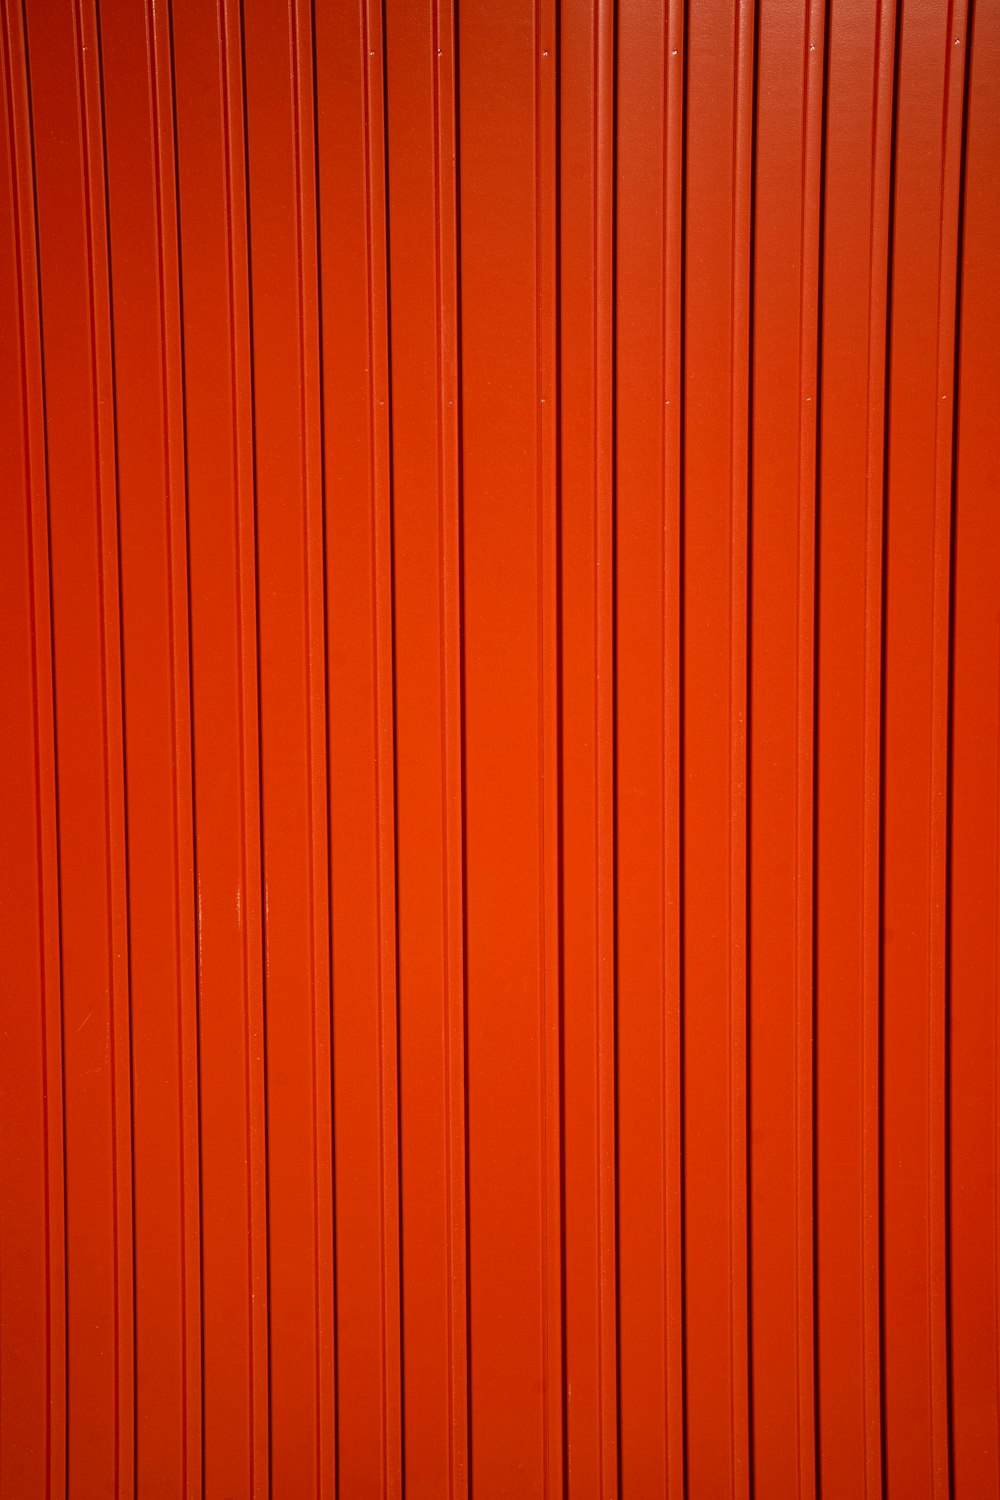 Ảnh gỗ đỏ là một tác phẩm nghệ thuật hoàn hảo để trang trí tường và tạo ra cảm giác ấn tượng cho không gian sống của bạn. Hình ảnh của loại gỗ độc đáo này sẽ mang lại một chút nét hoang dã và thiên nhiên vào nhà bạn, tạo ra một không gian thoải mái và bình yên. Hãy xem hình ảnh liên quan đến từ khóa \